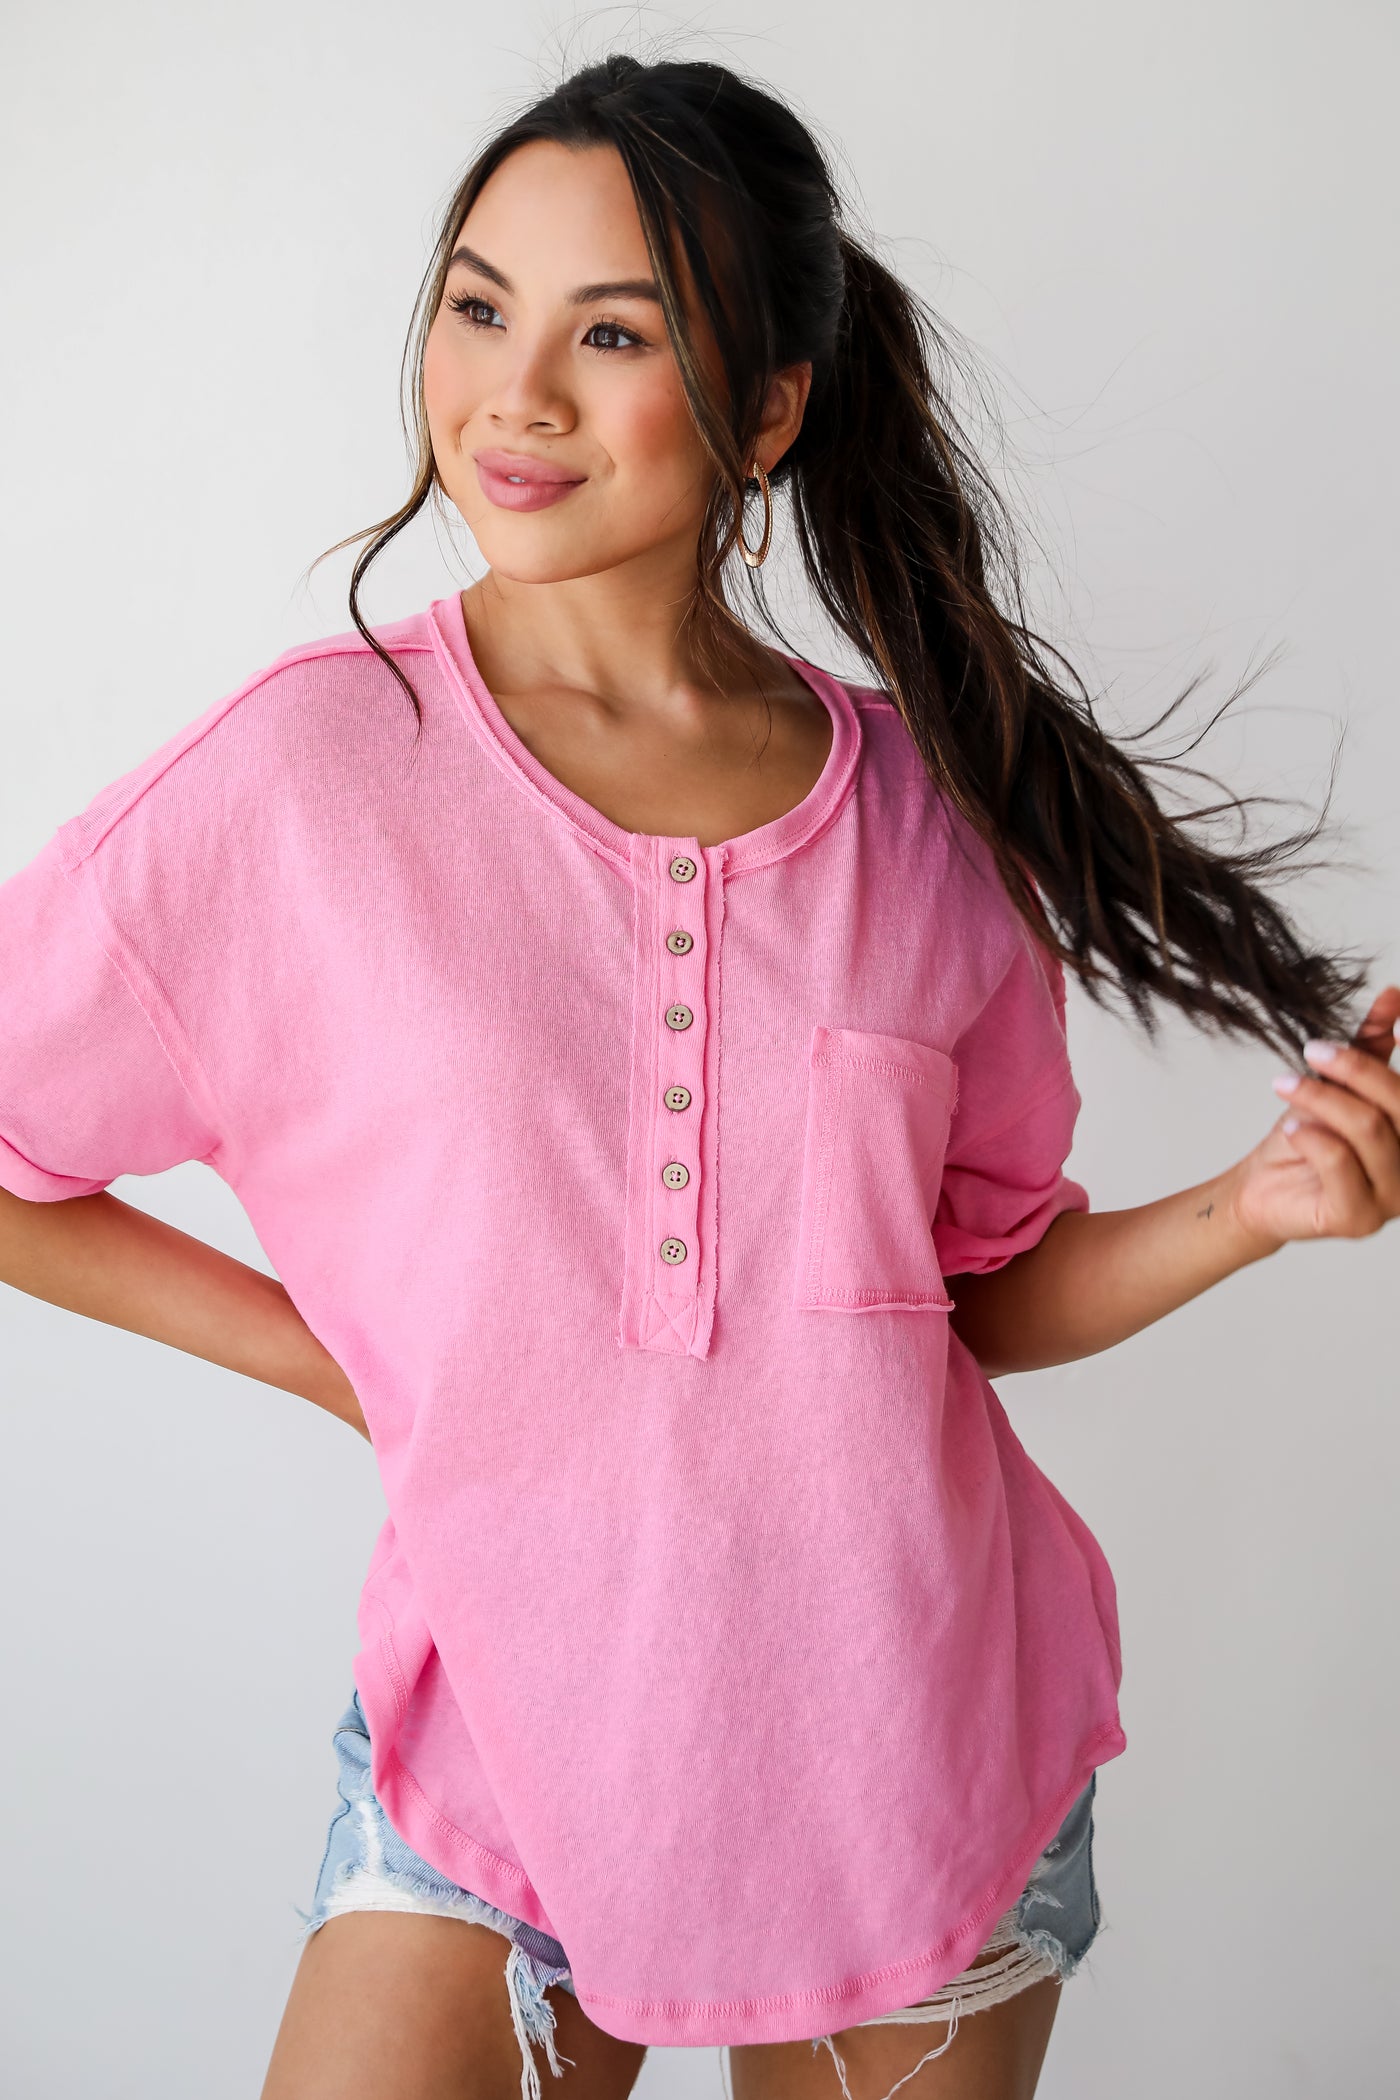 Women's Pink Henley Tee. An Online Boutique. Button Up. Shopdressup